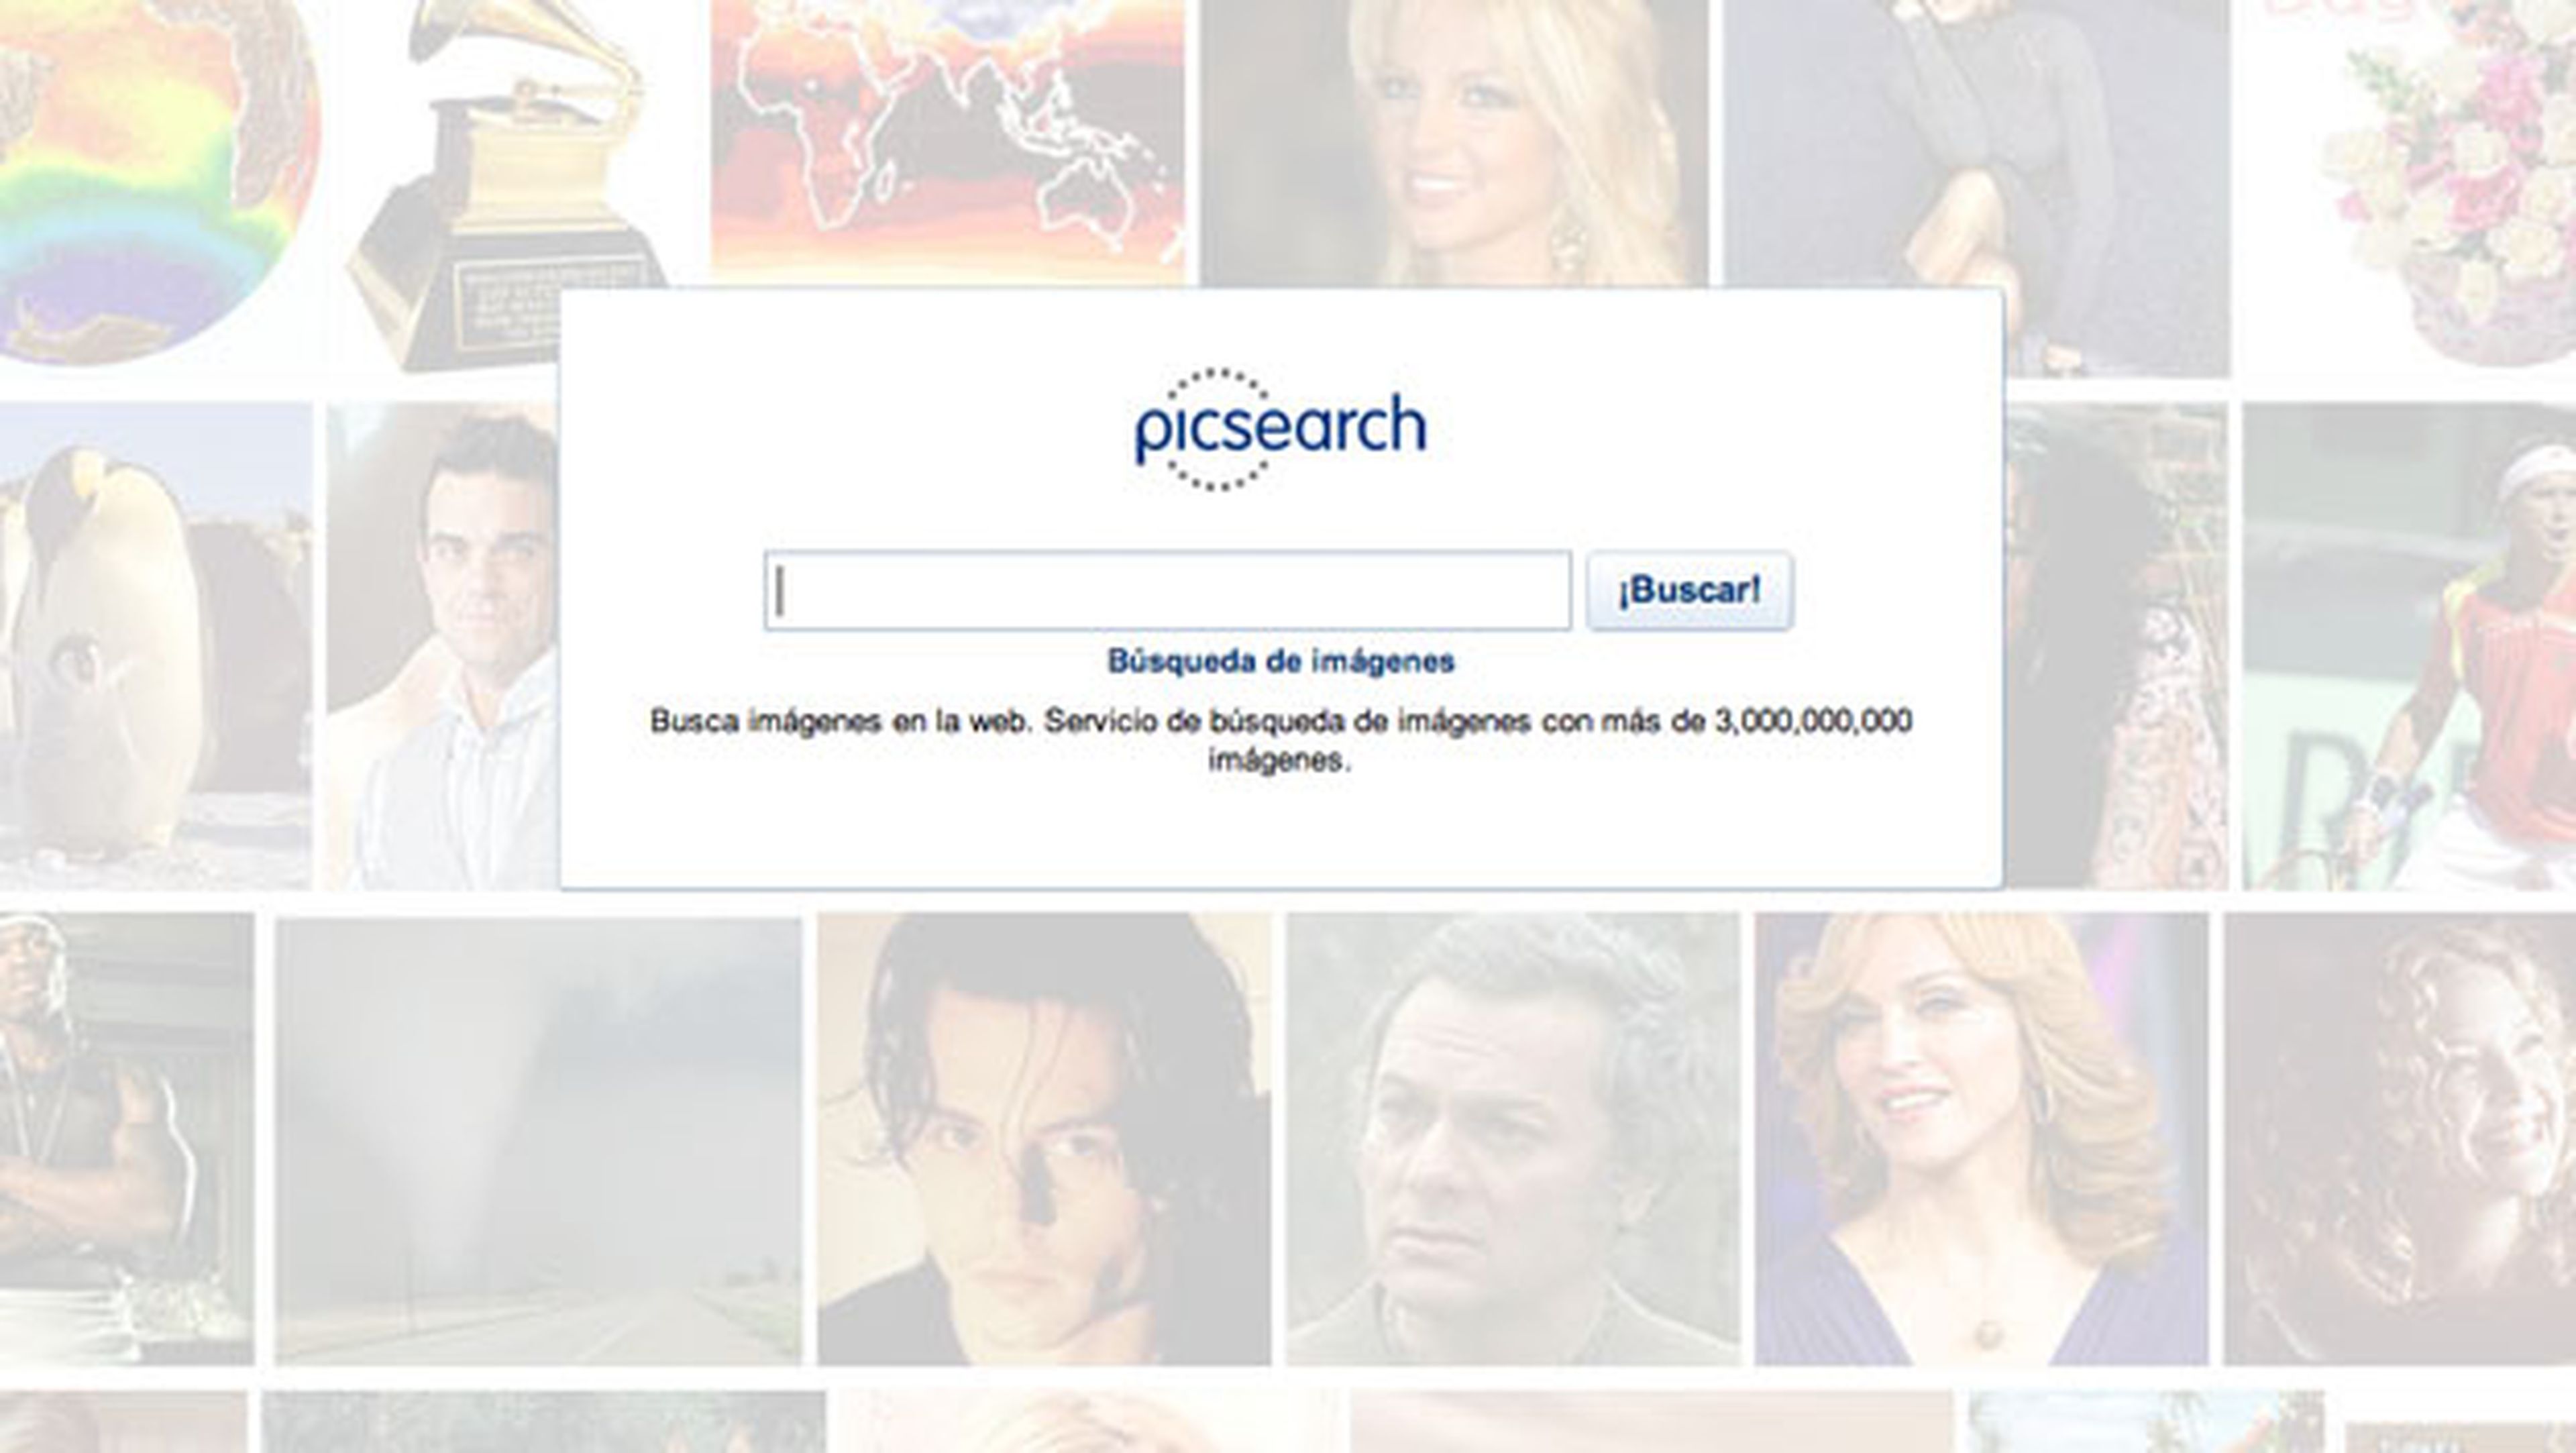 Picksearch